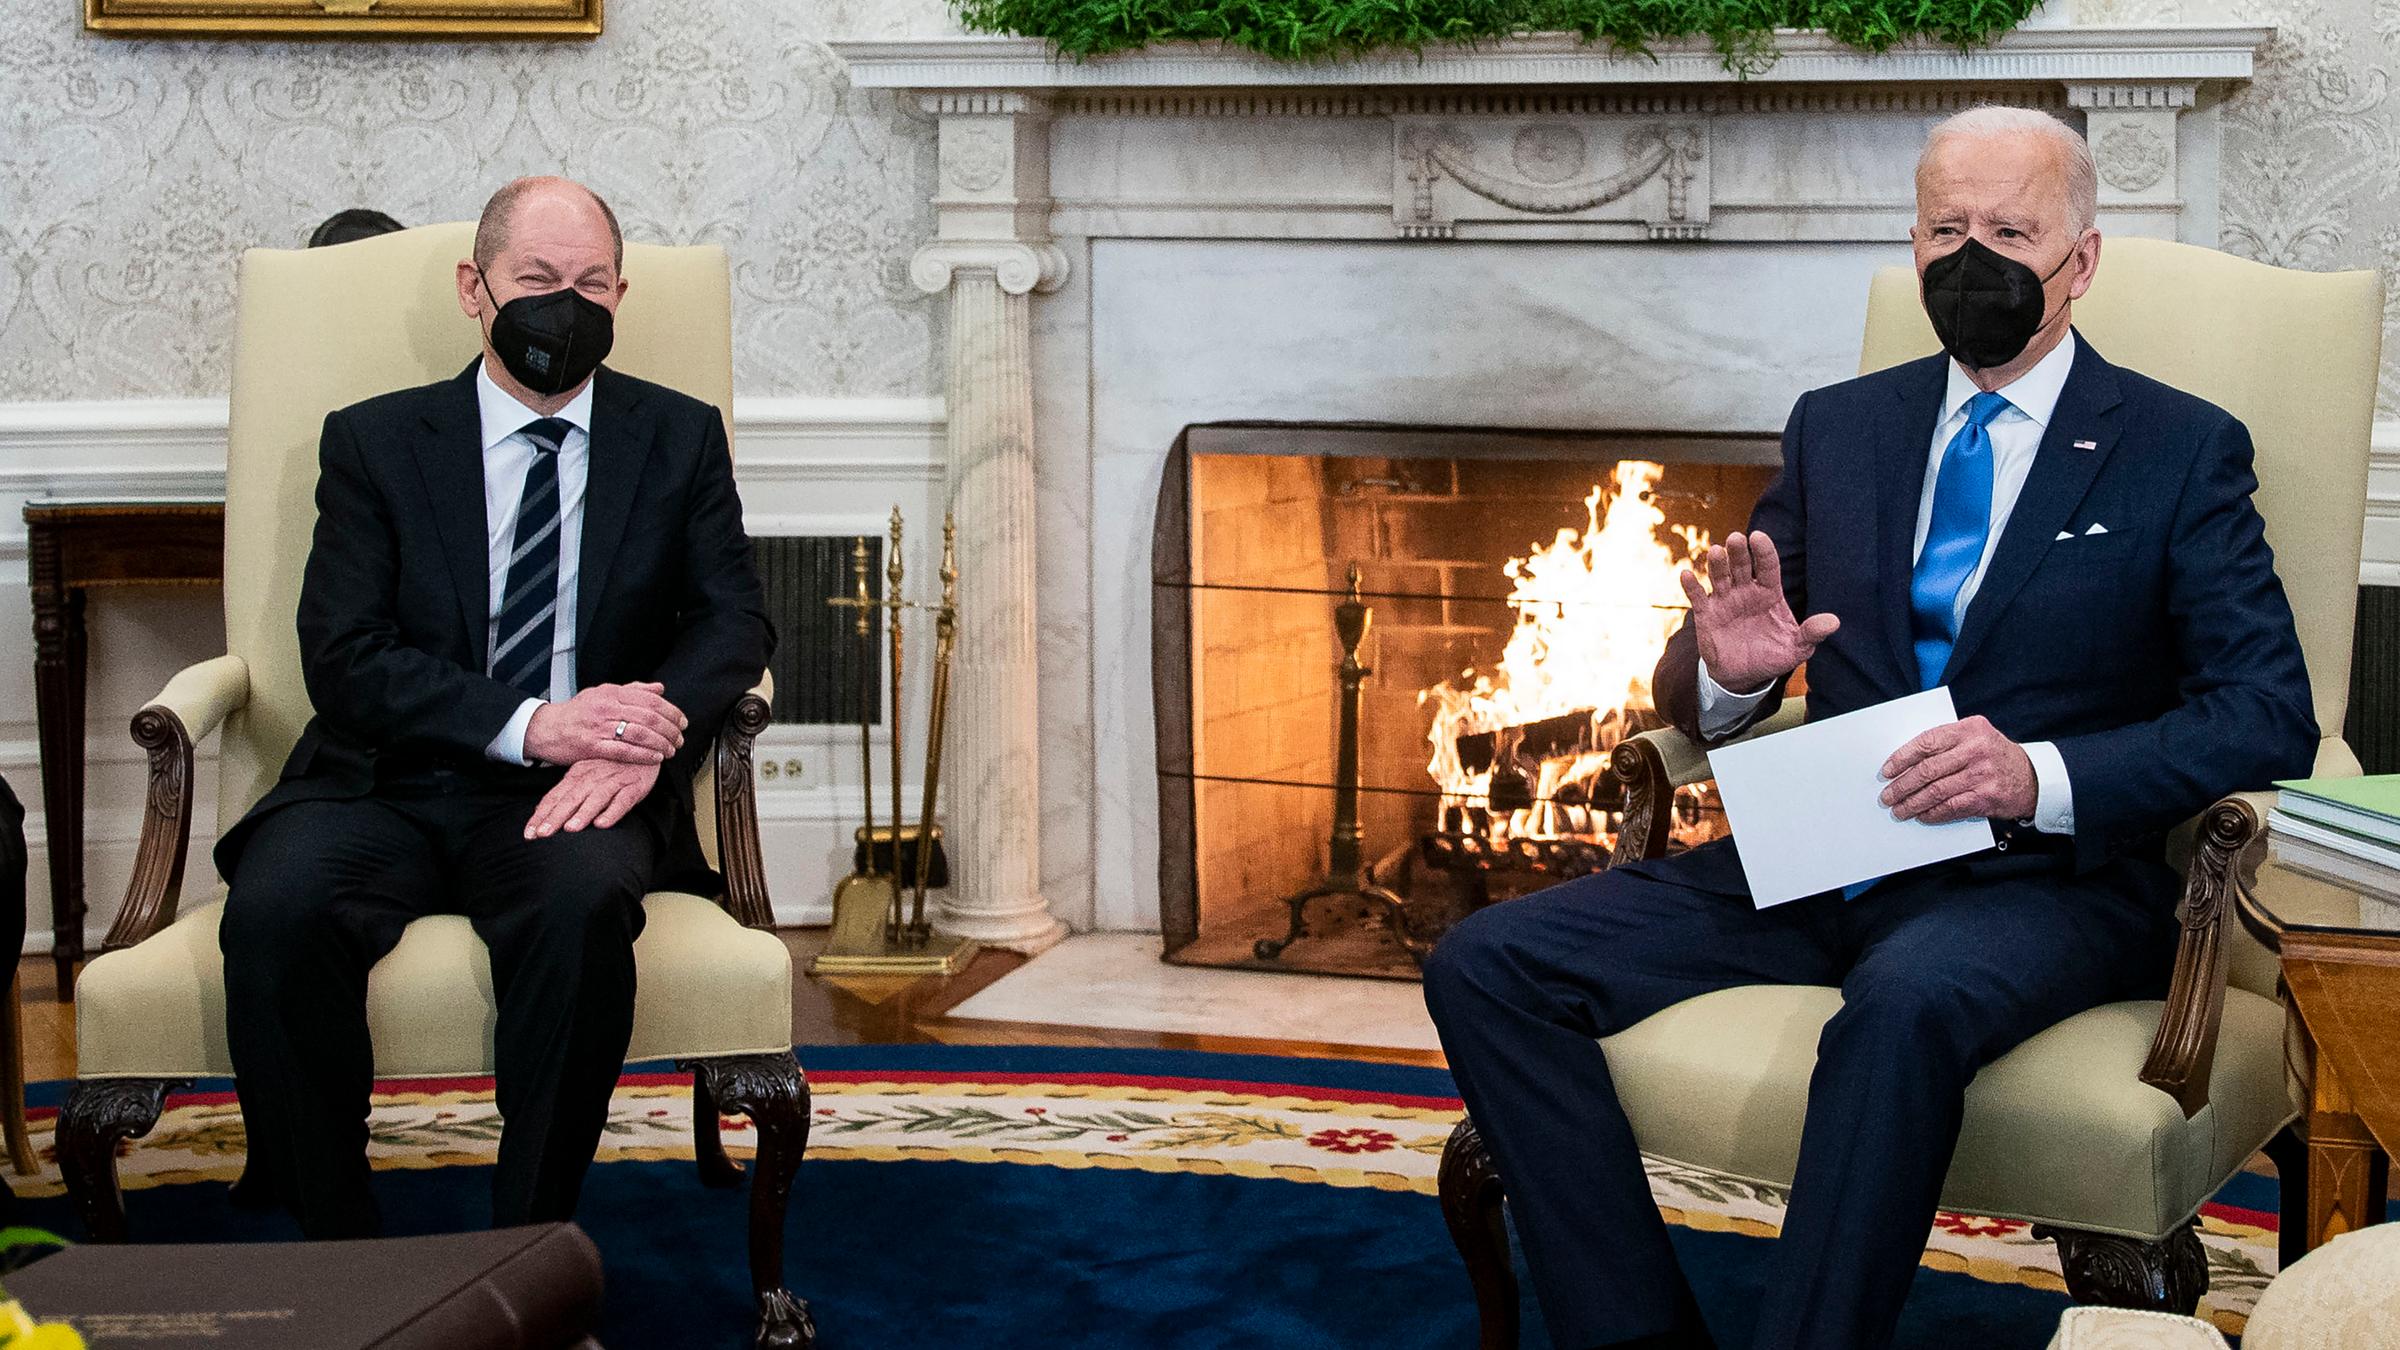 Bundeskanzler Olaf Scholz und US-Präsident Joe Biden vor dem brennenden Kamin bei einem Treffen im Weißen Haus in Washington. 